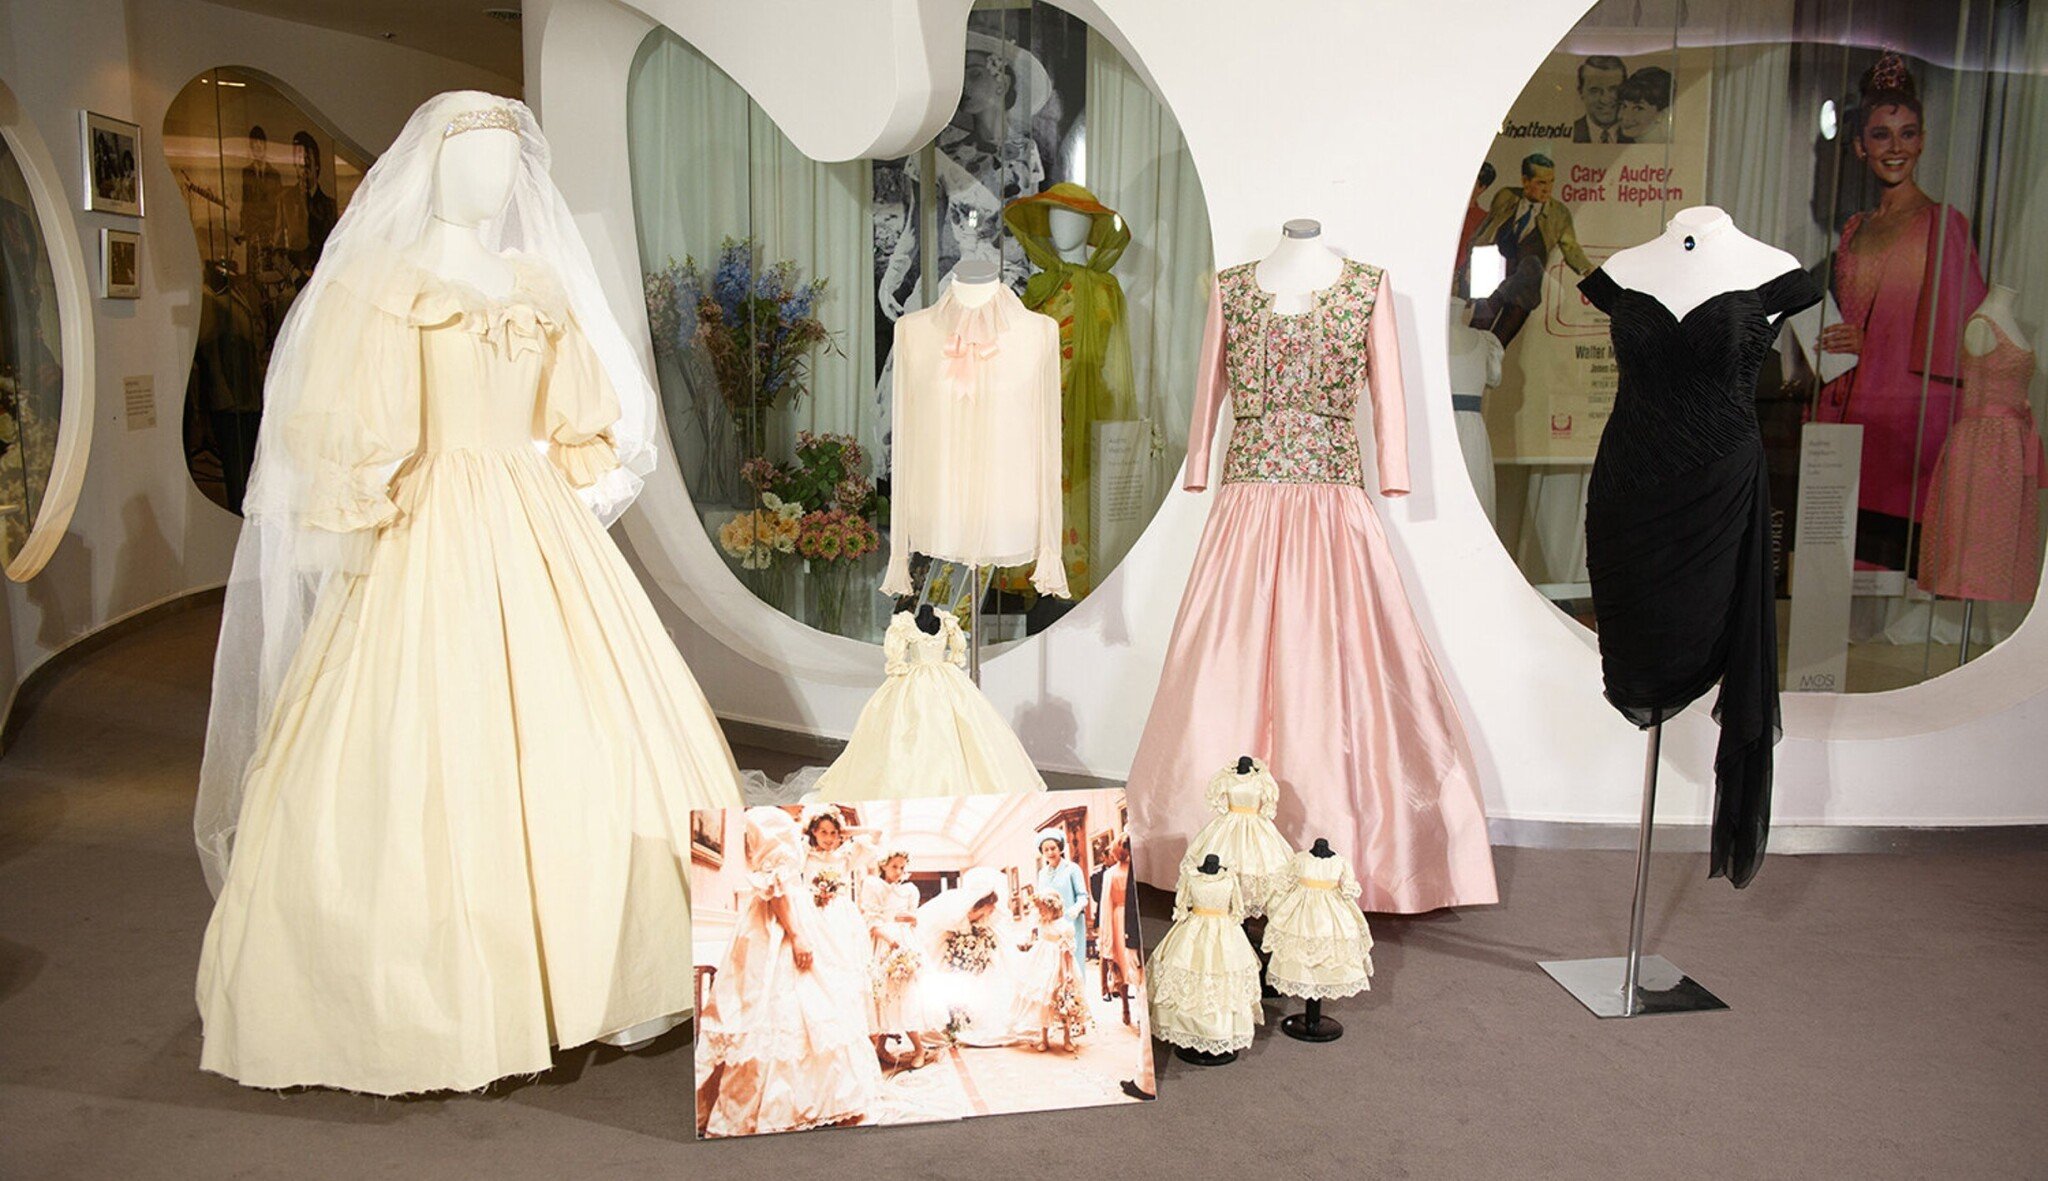 Šaty Hepburn i princezny Diany. Irské muzeum oslavuje nejen hollywoodský šarm